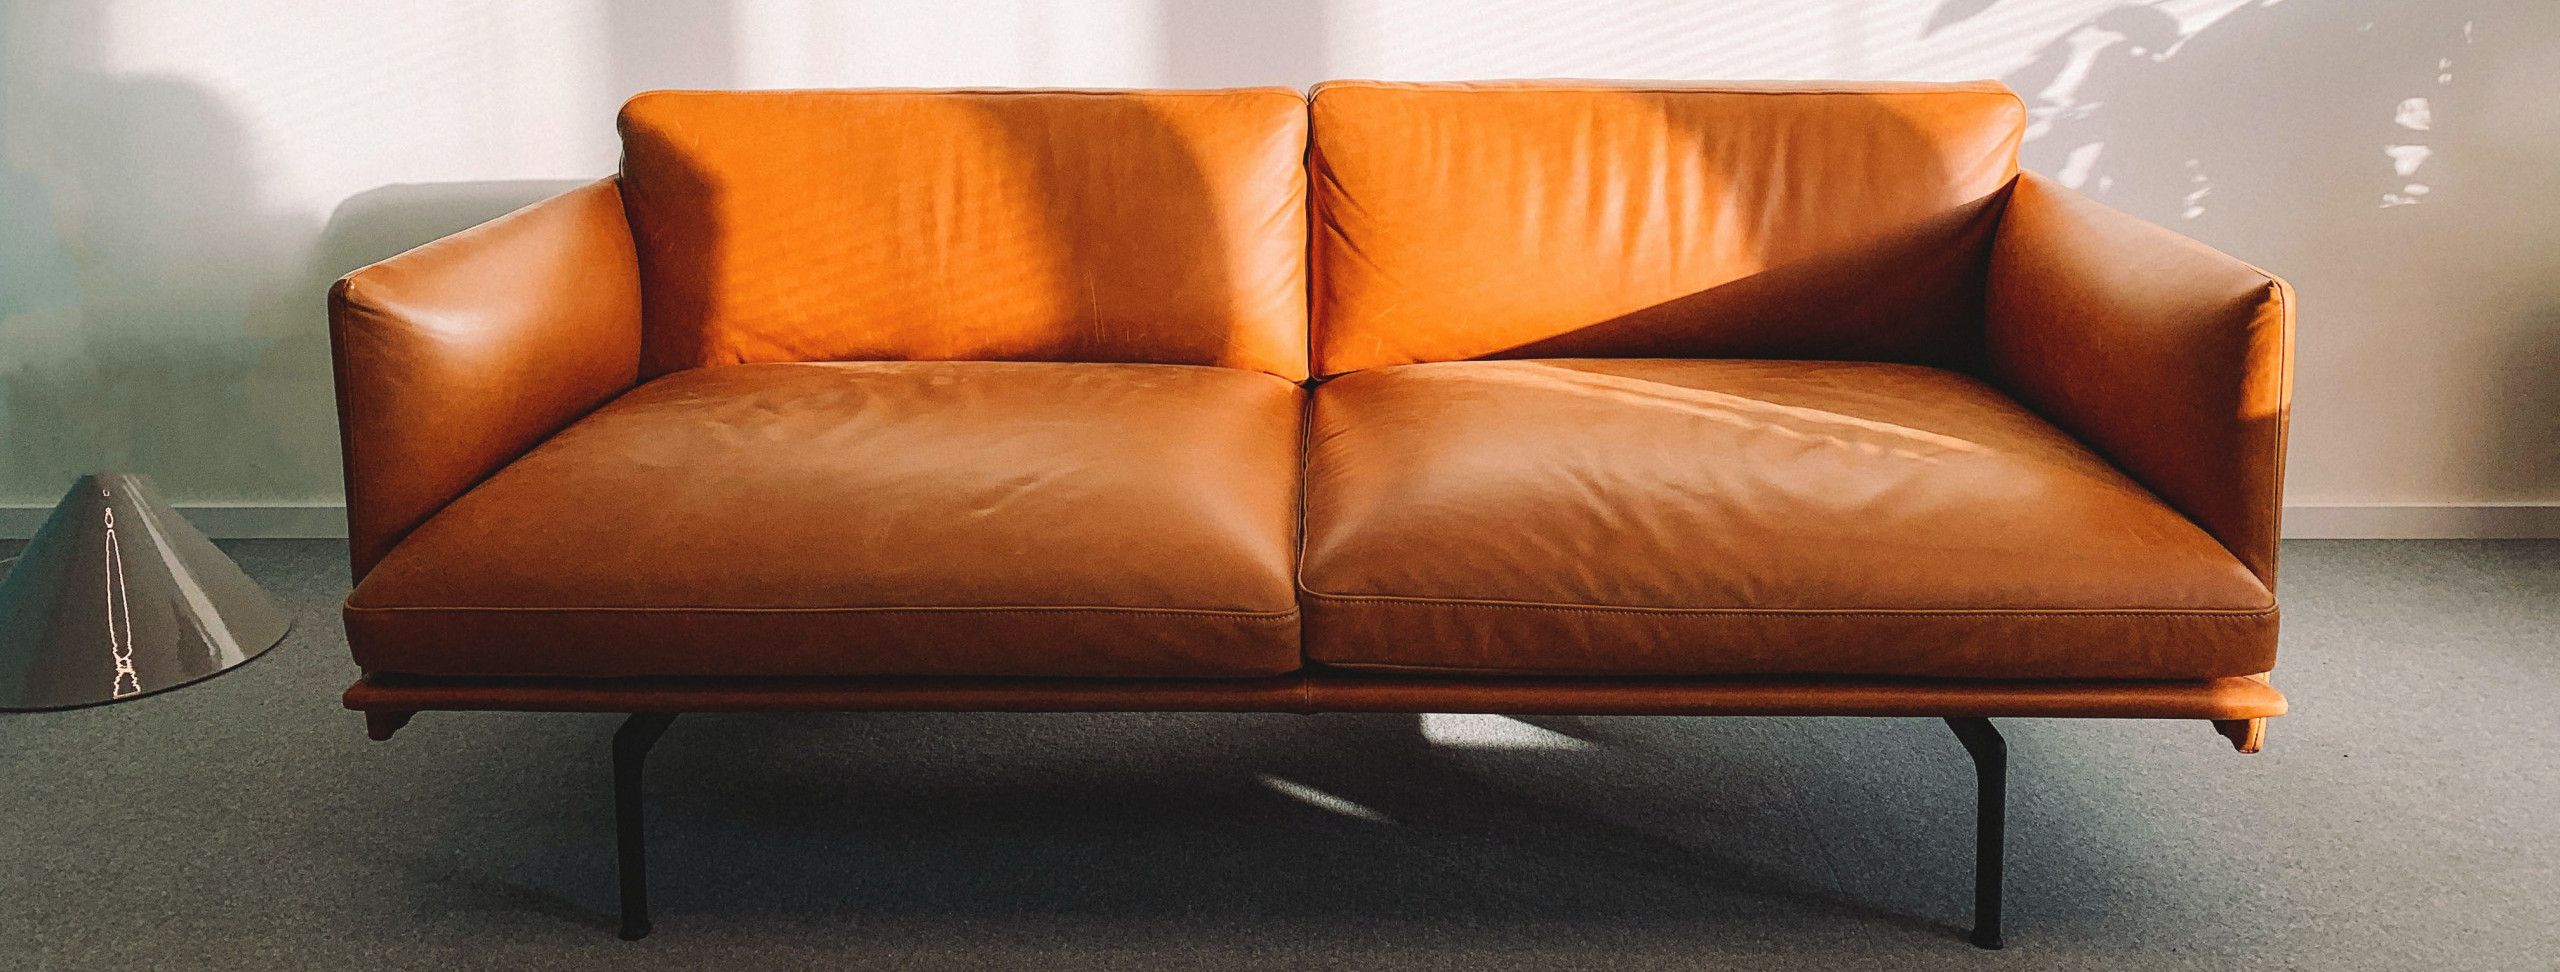 sofa-apartamento-couro-espaco-moderno-marrom-cor-tecido